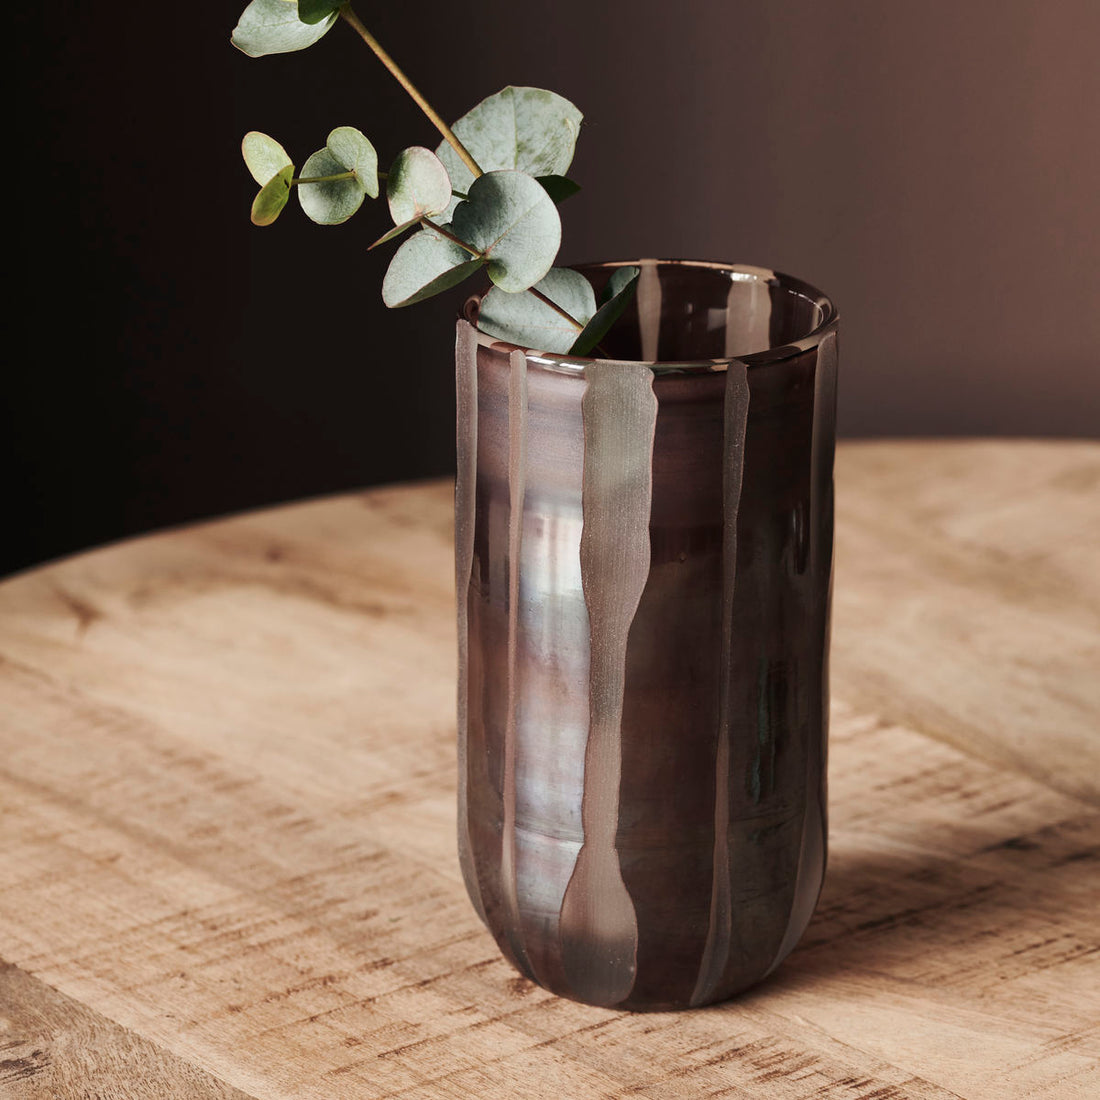 Hausarzt - Vase, Bai, Brown - H: 15,5 cm, Dia: 8 cm